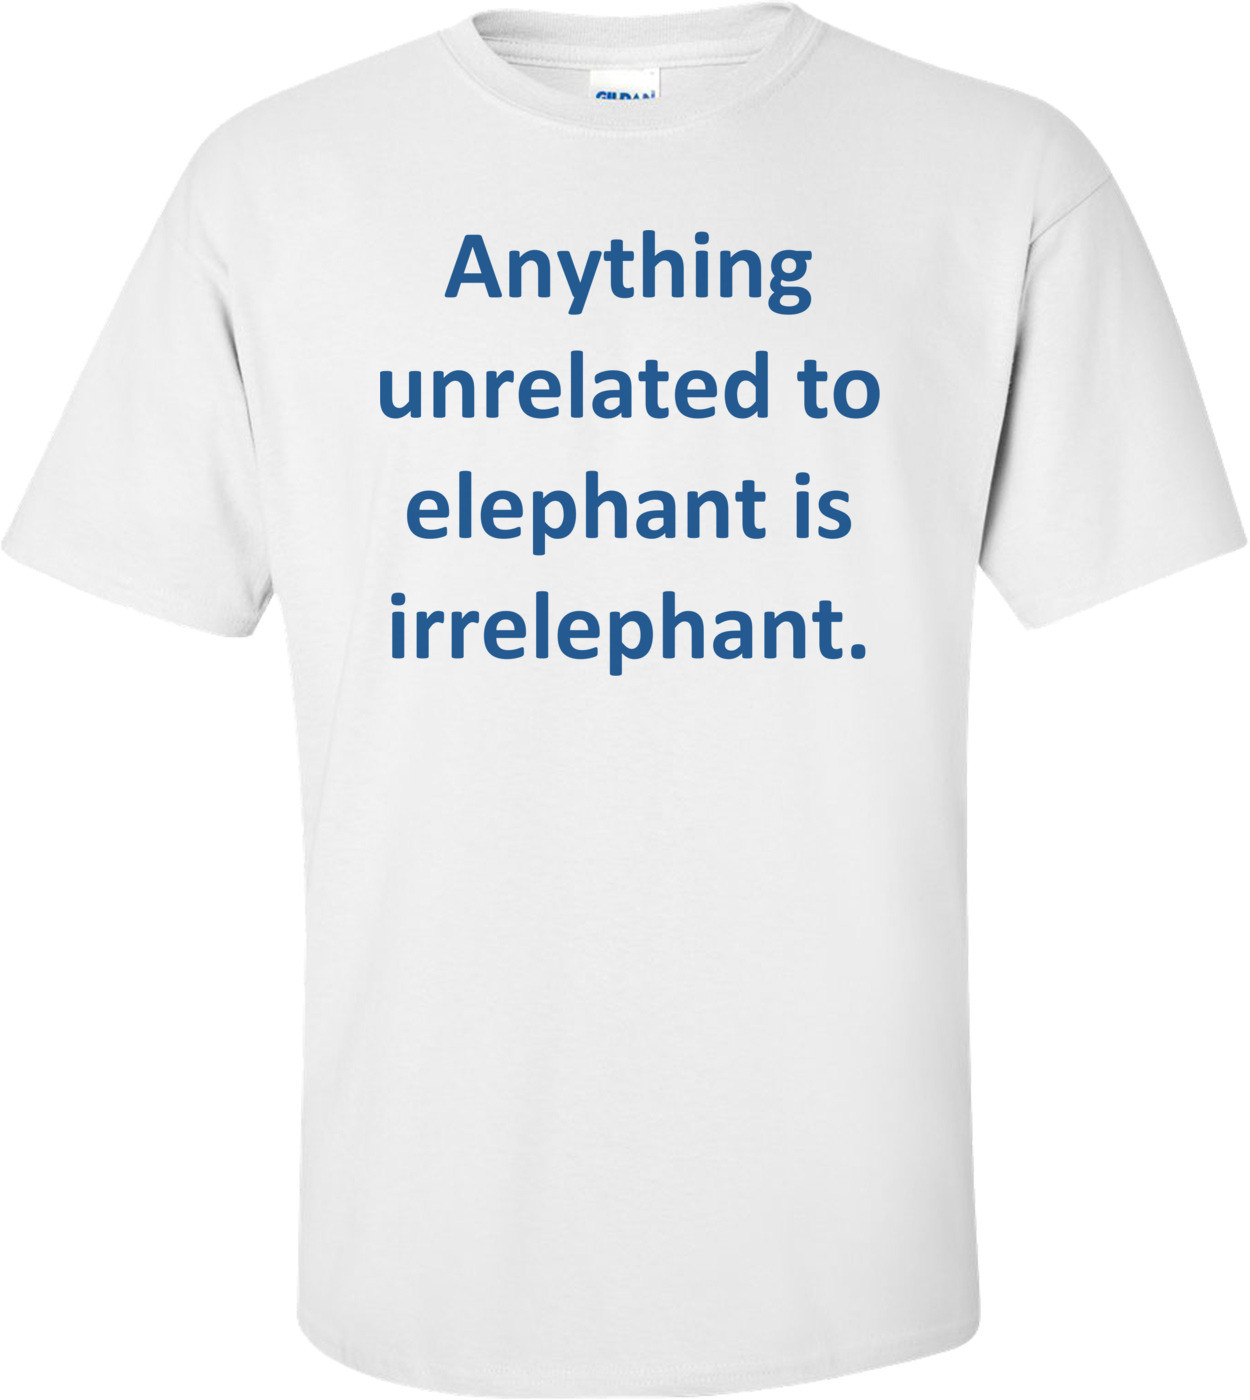 Anything unrelated to elephant is irrelephant.